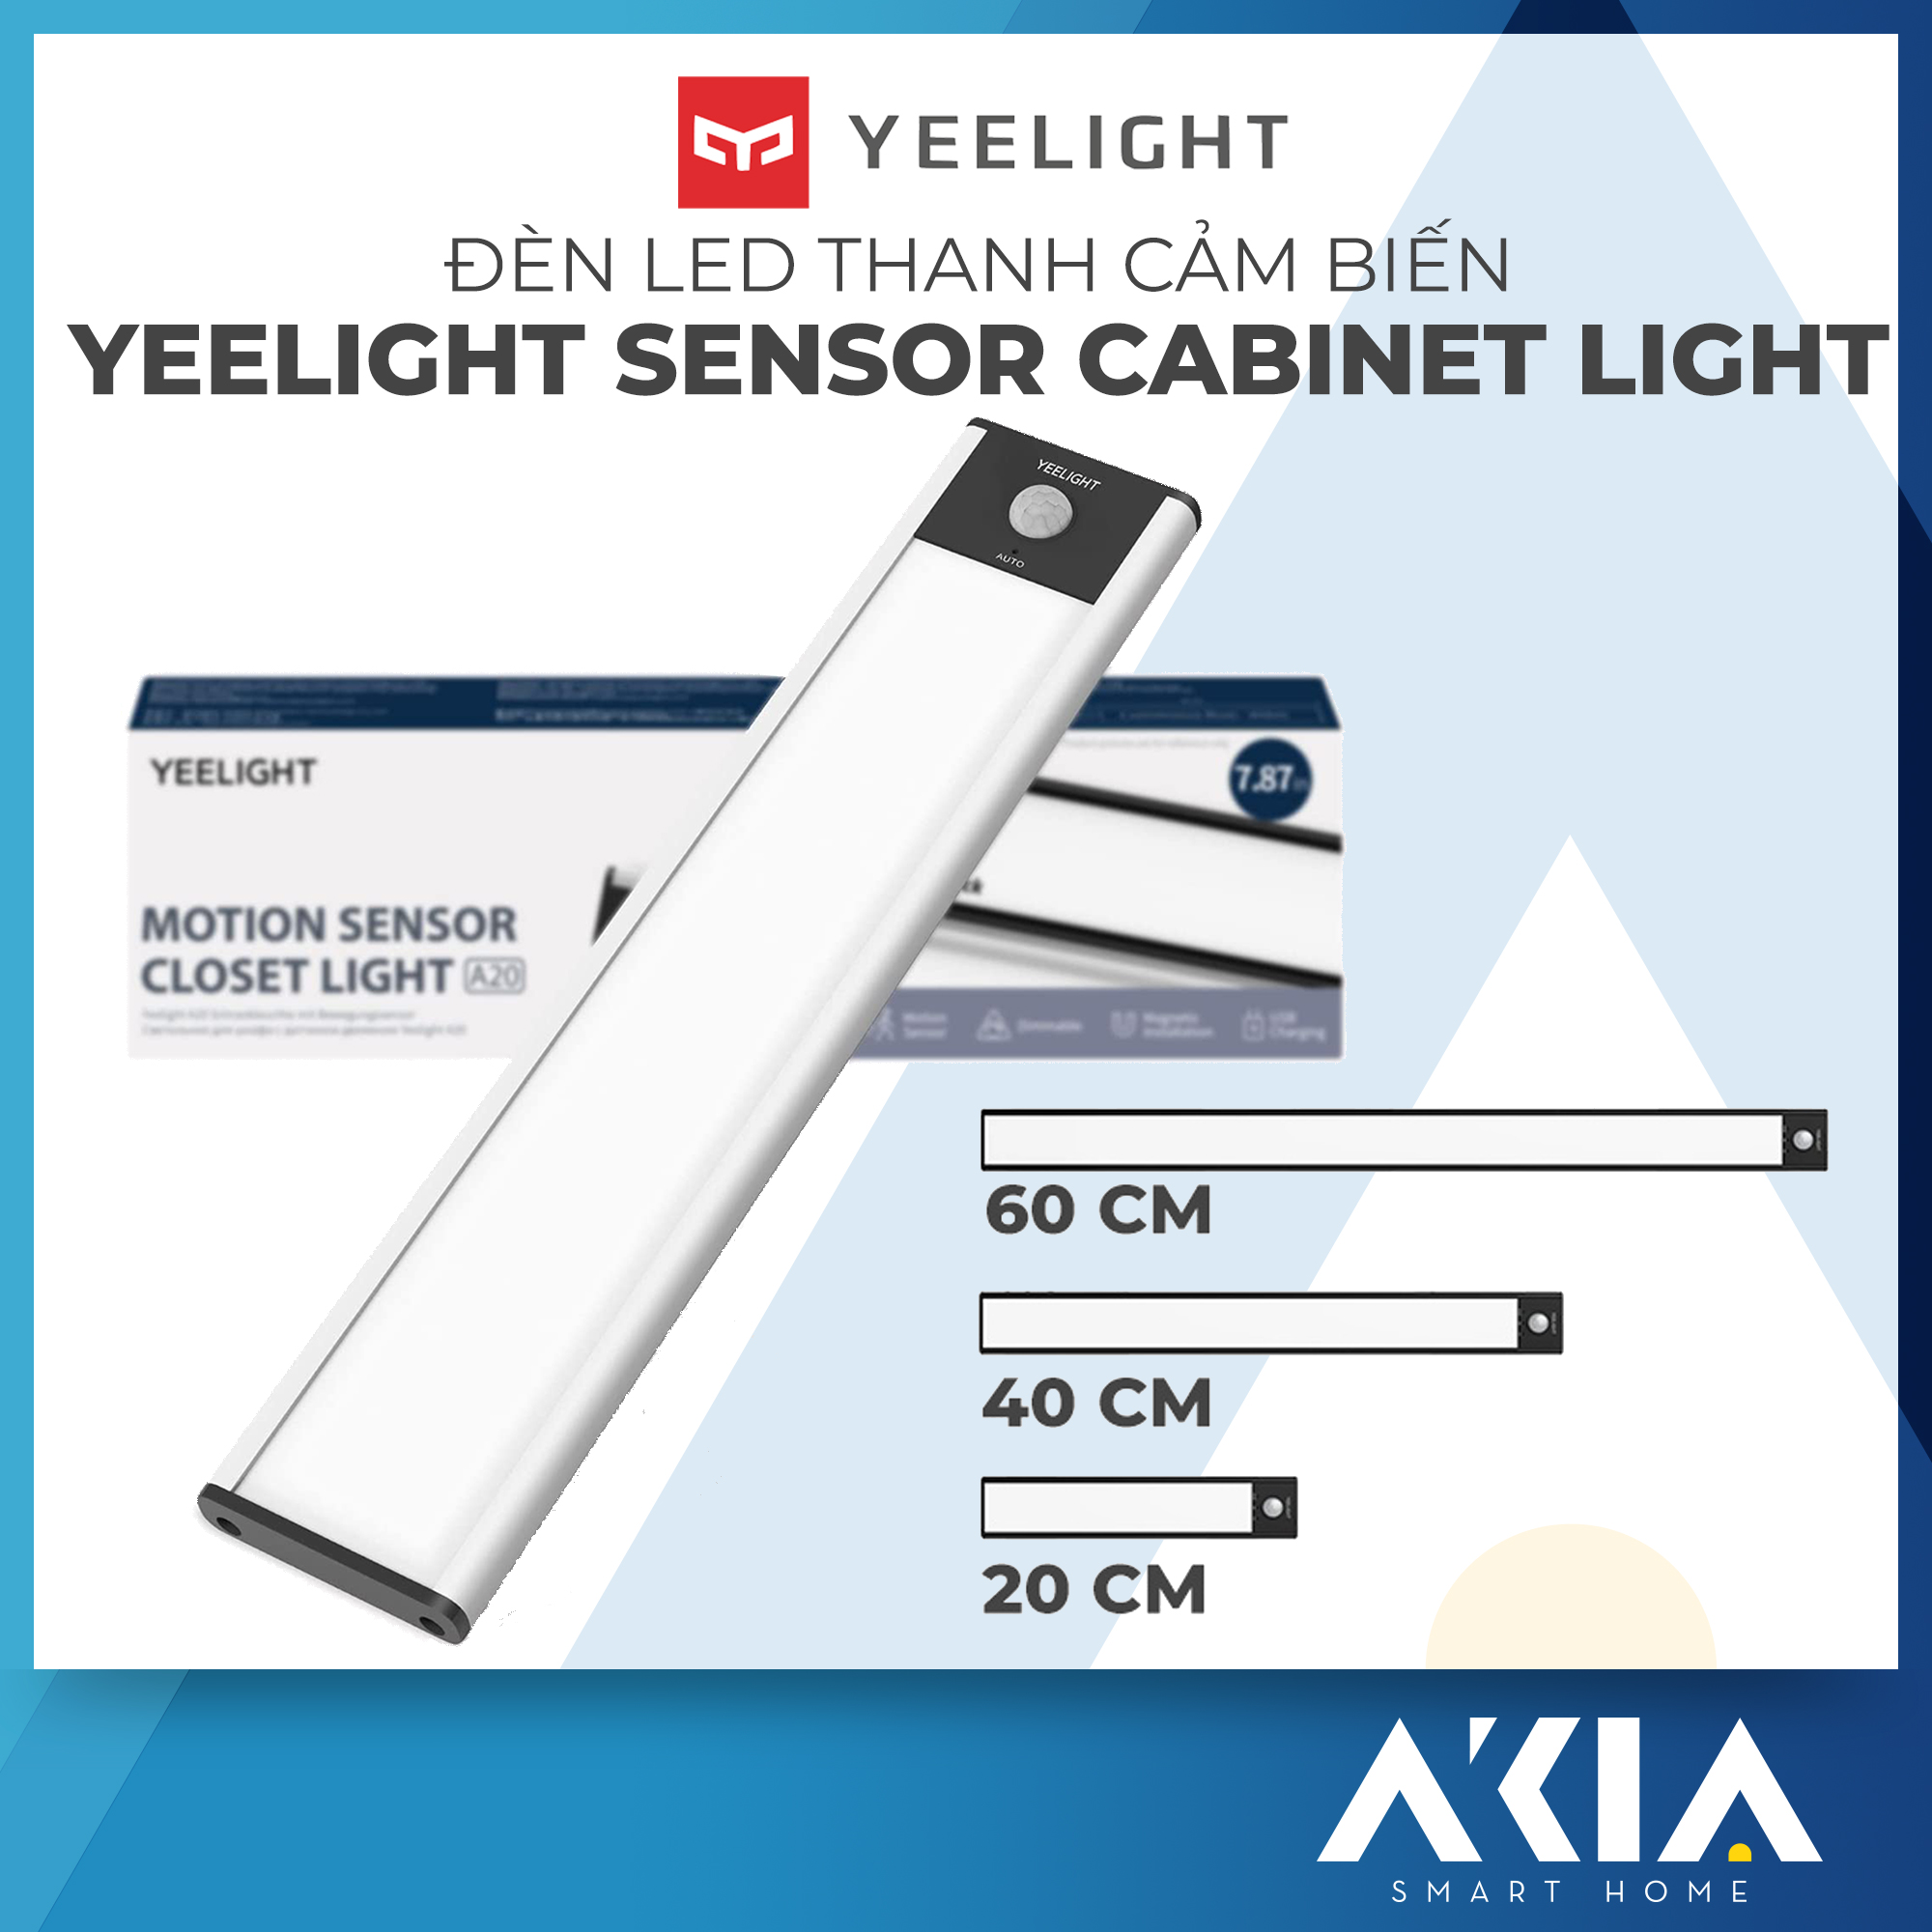 Đèn led thanh cảm biến tích điện Xiaomi Yeelight, 20-40-60cm, pin sạc type C - Nhập khẩu chính hãng